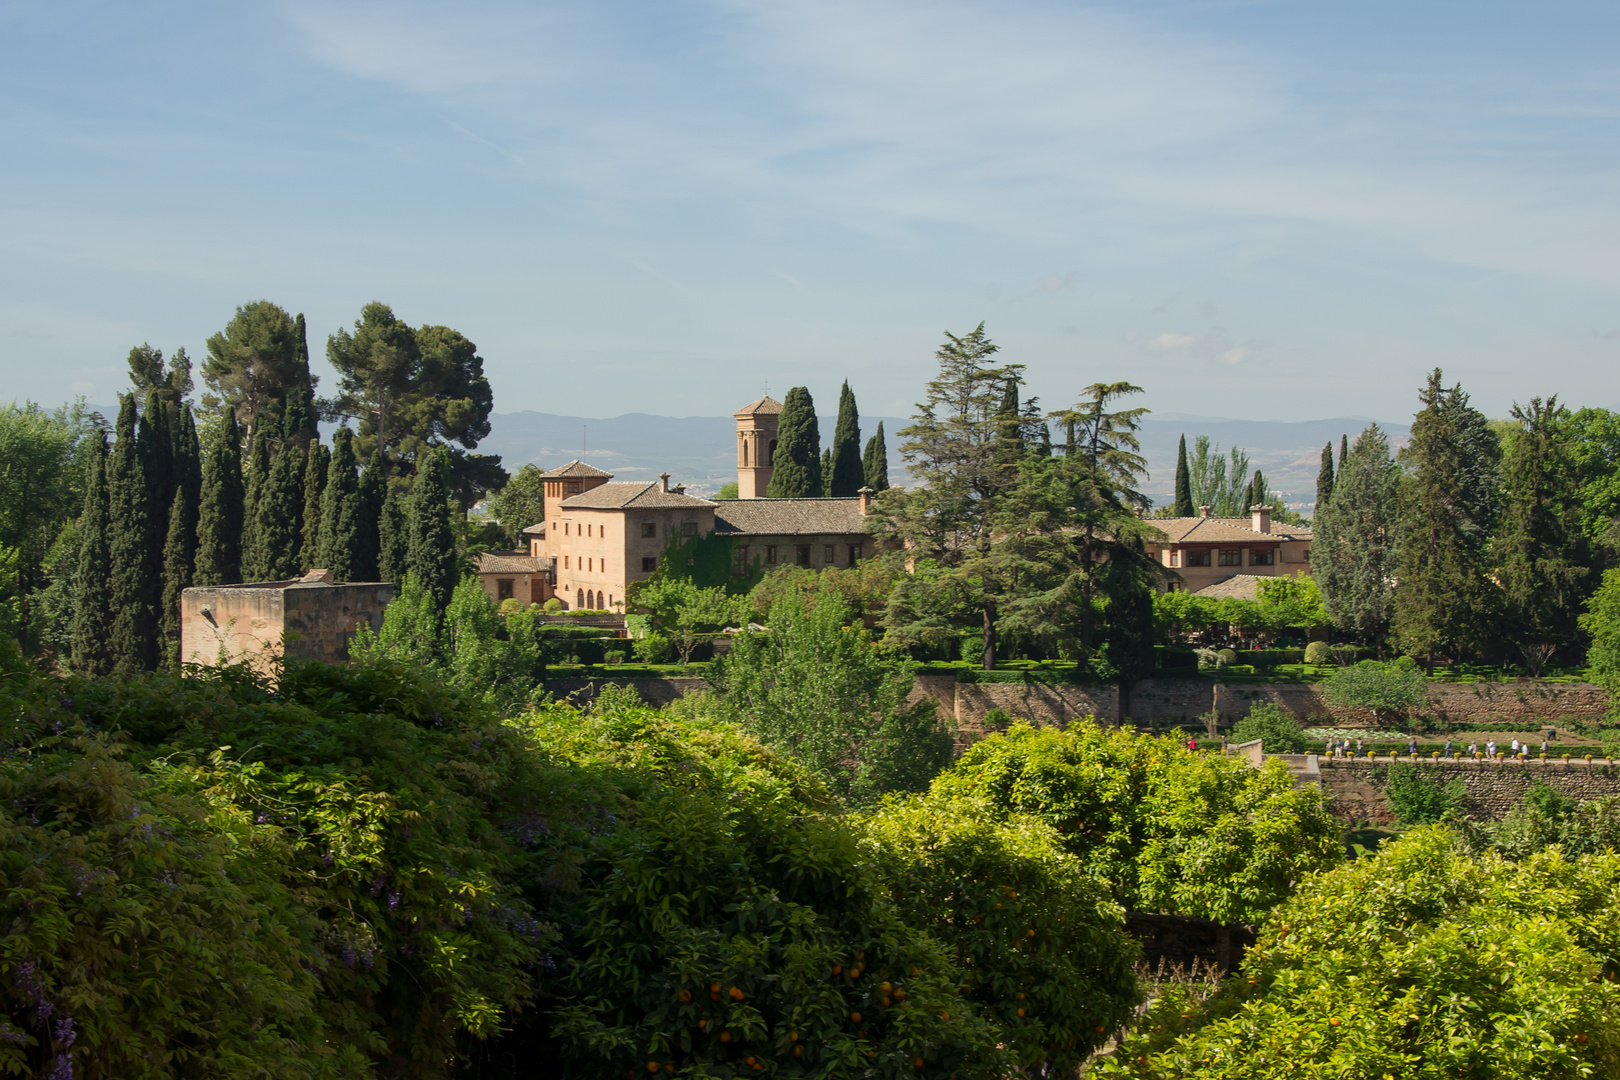 In den Gärten der Alhambra